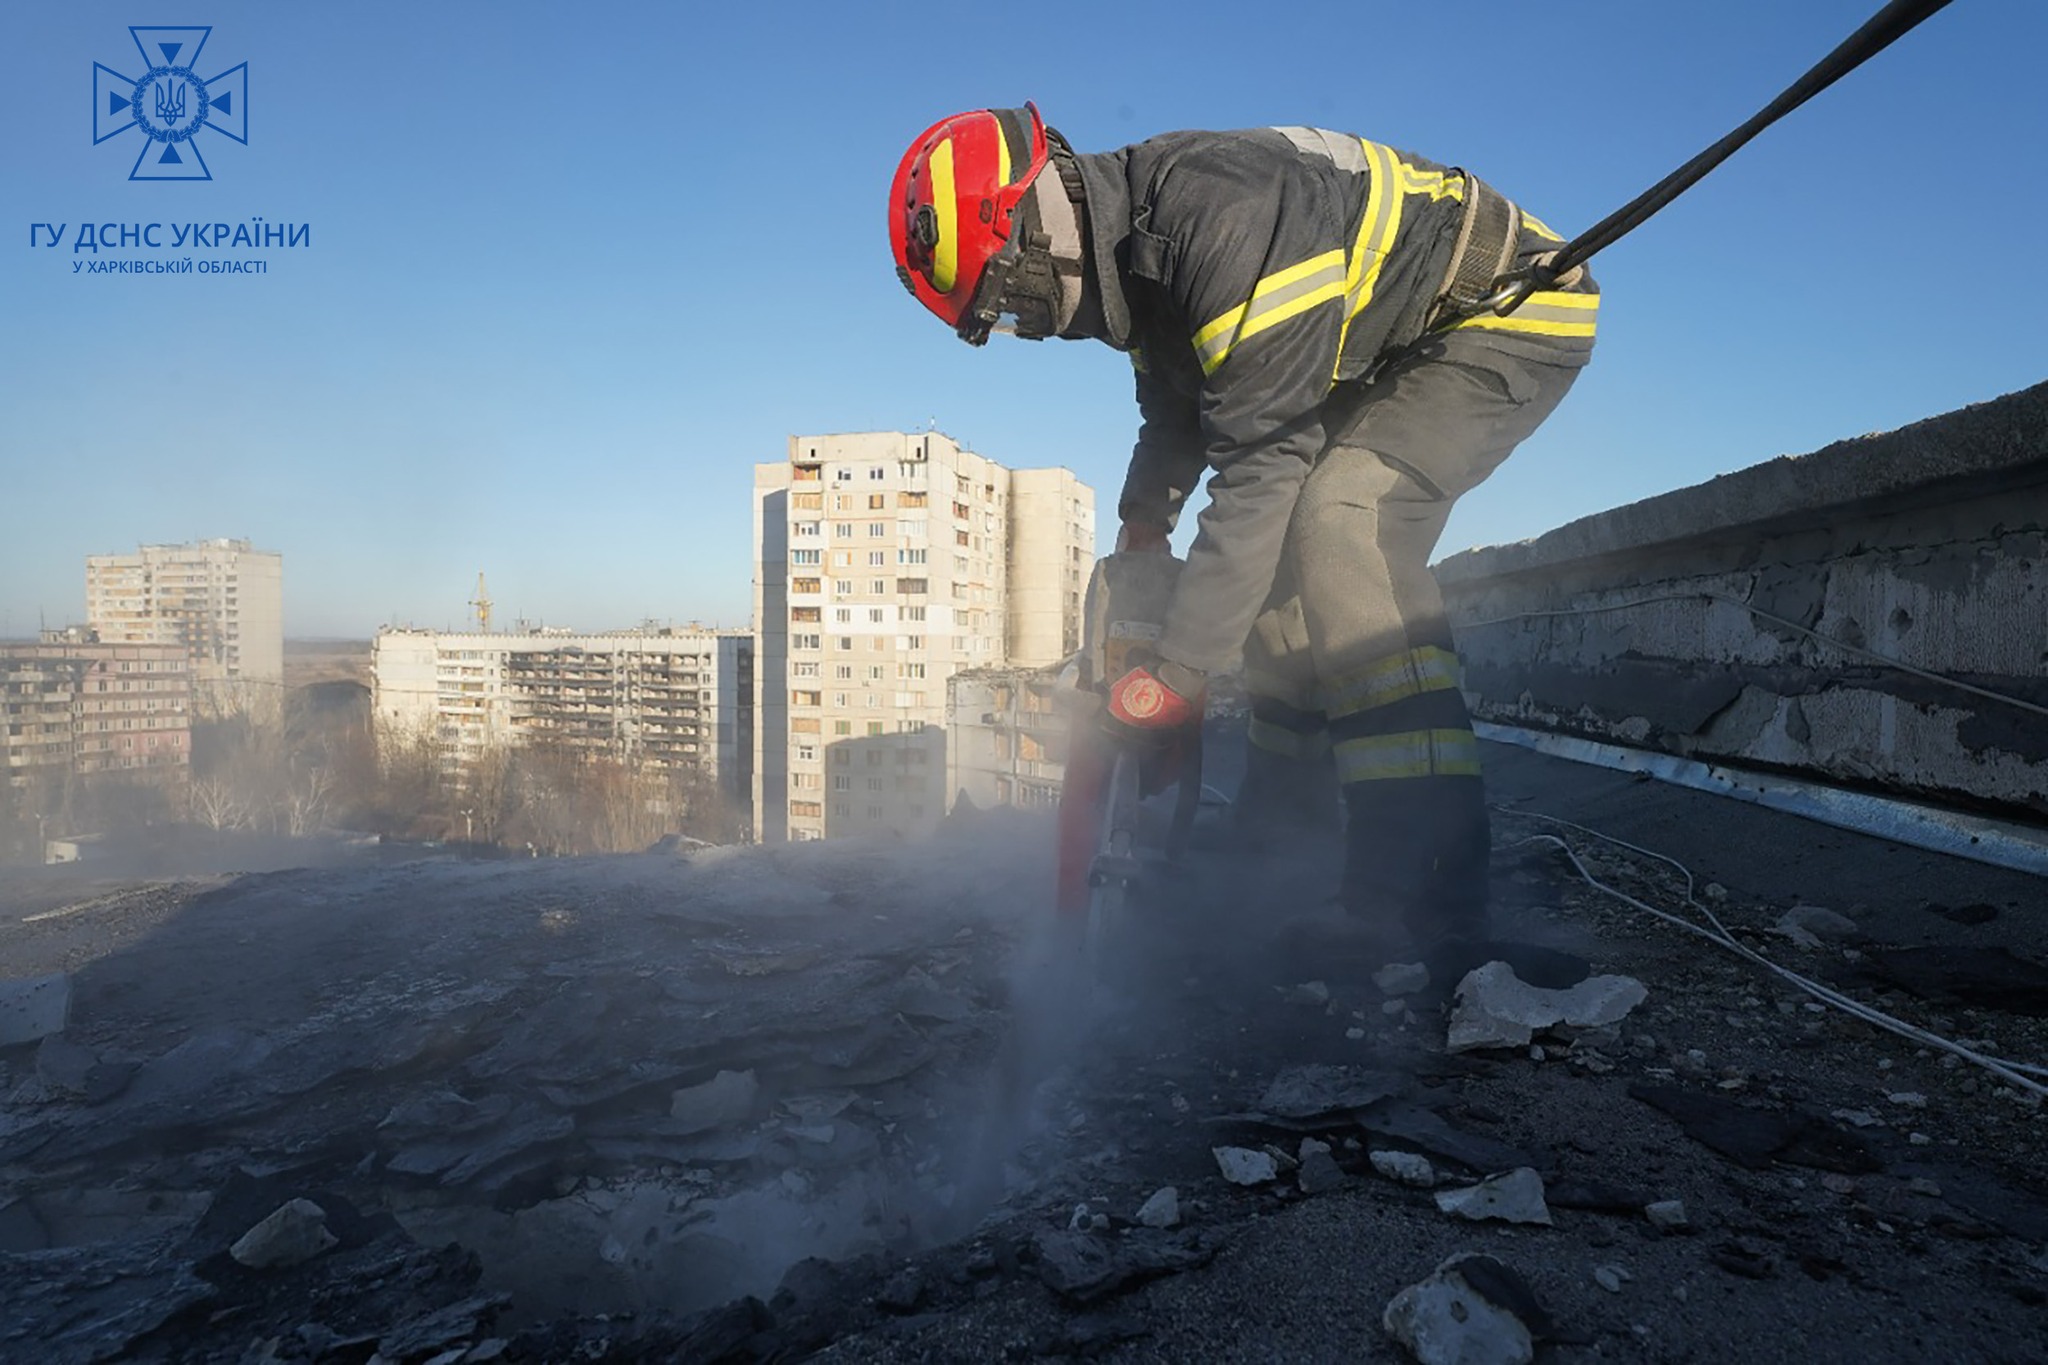 У Харкові розбирають завали будівель 23 січня для подальшого ремонту